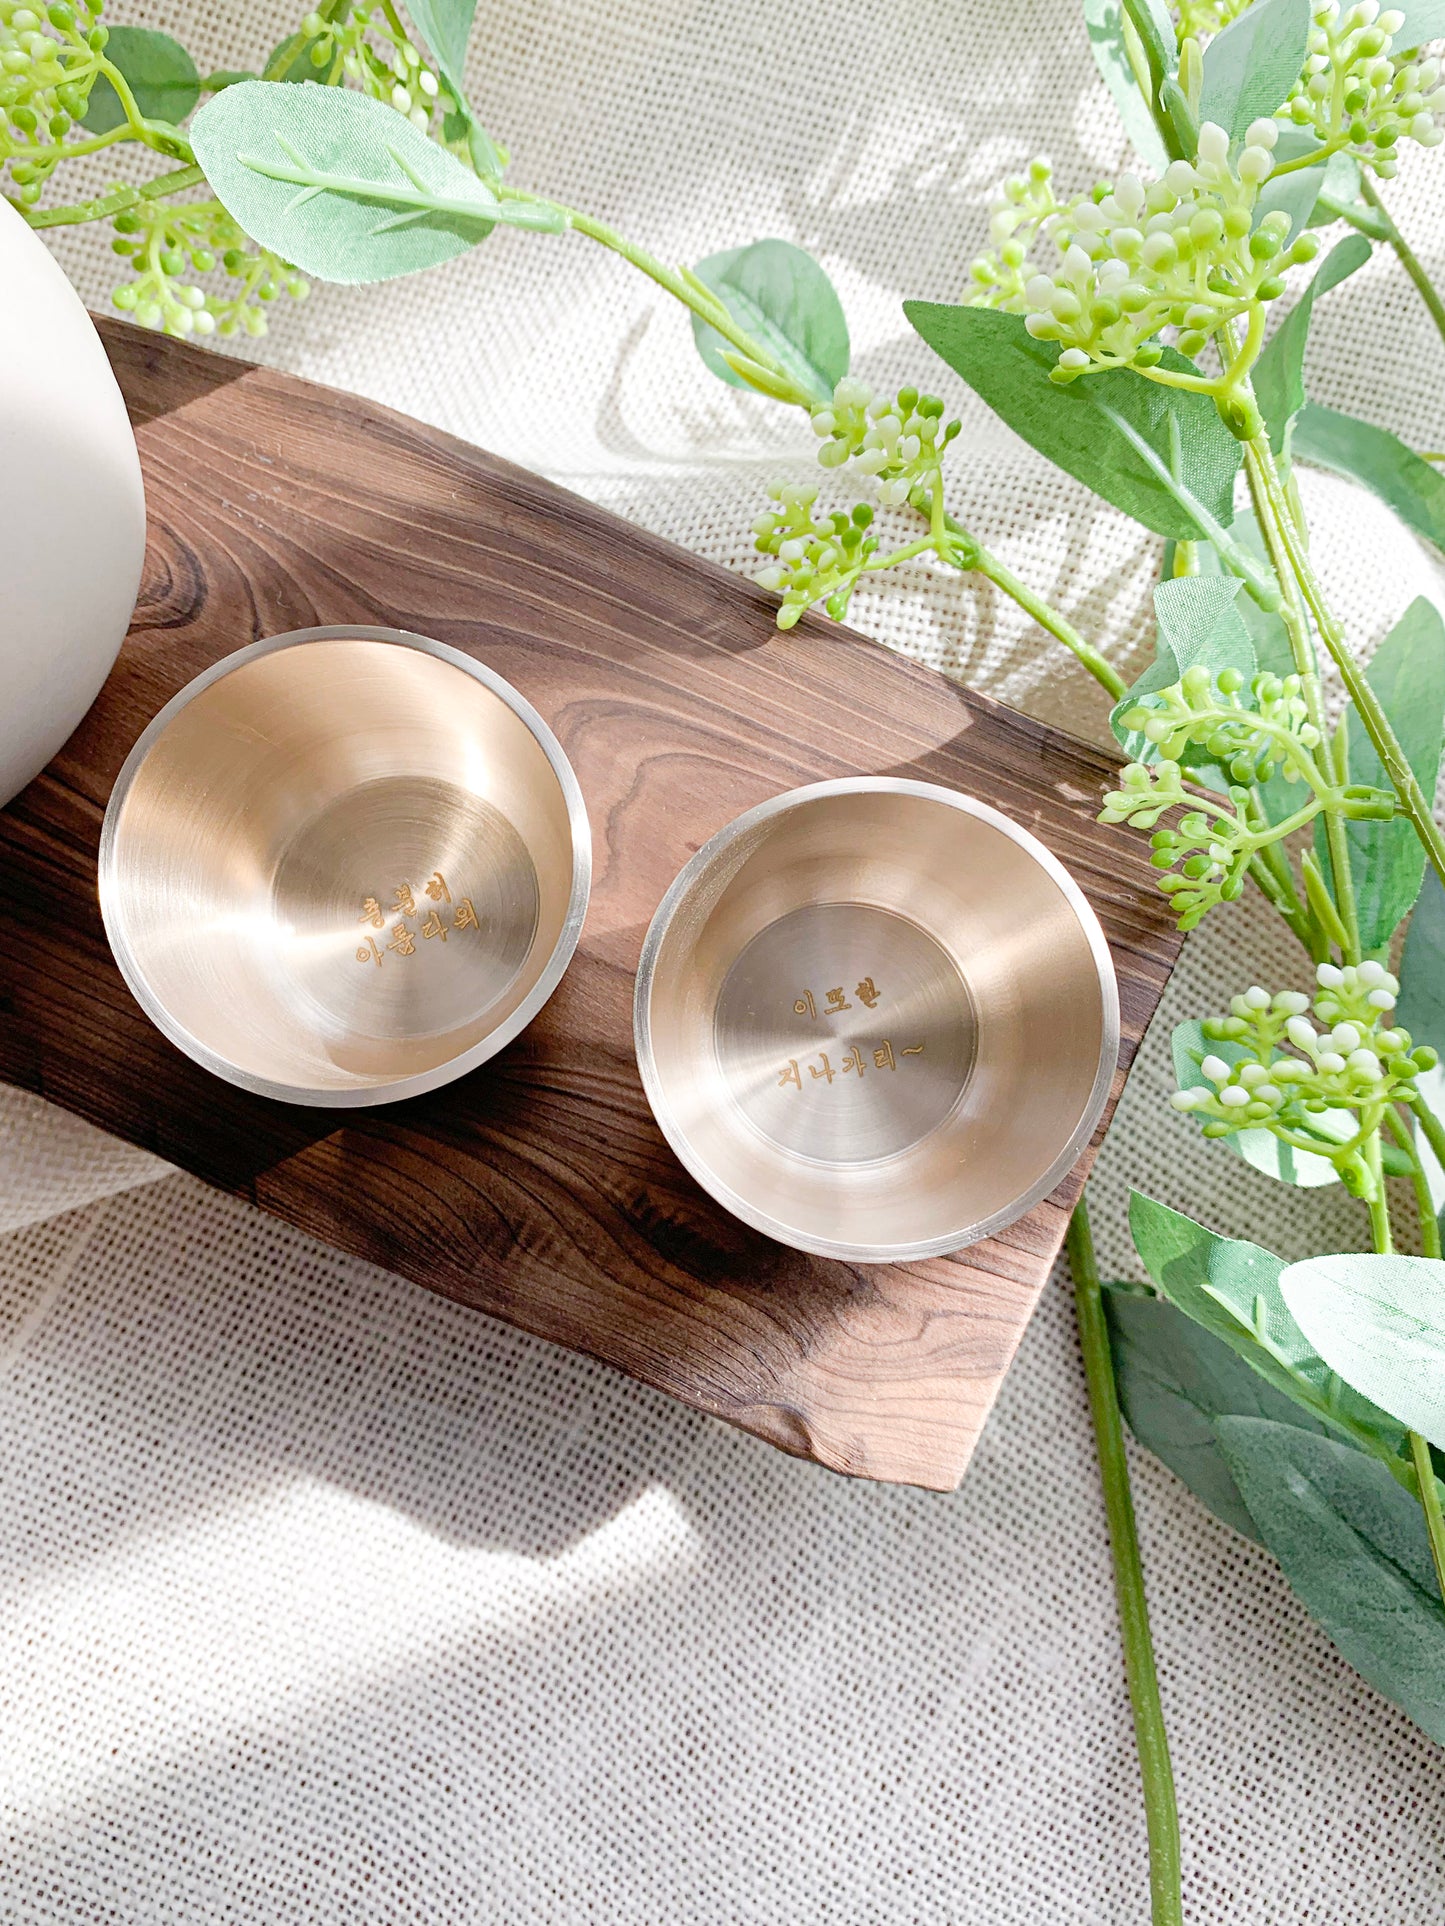 Bangjja Yugi 2P Tea/Sake/Soju Cup Set [Angle] + Custome Engraving (Optional)